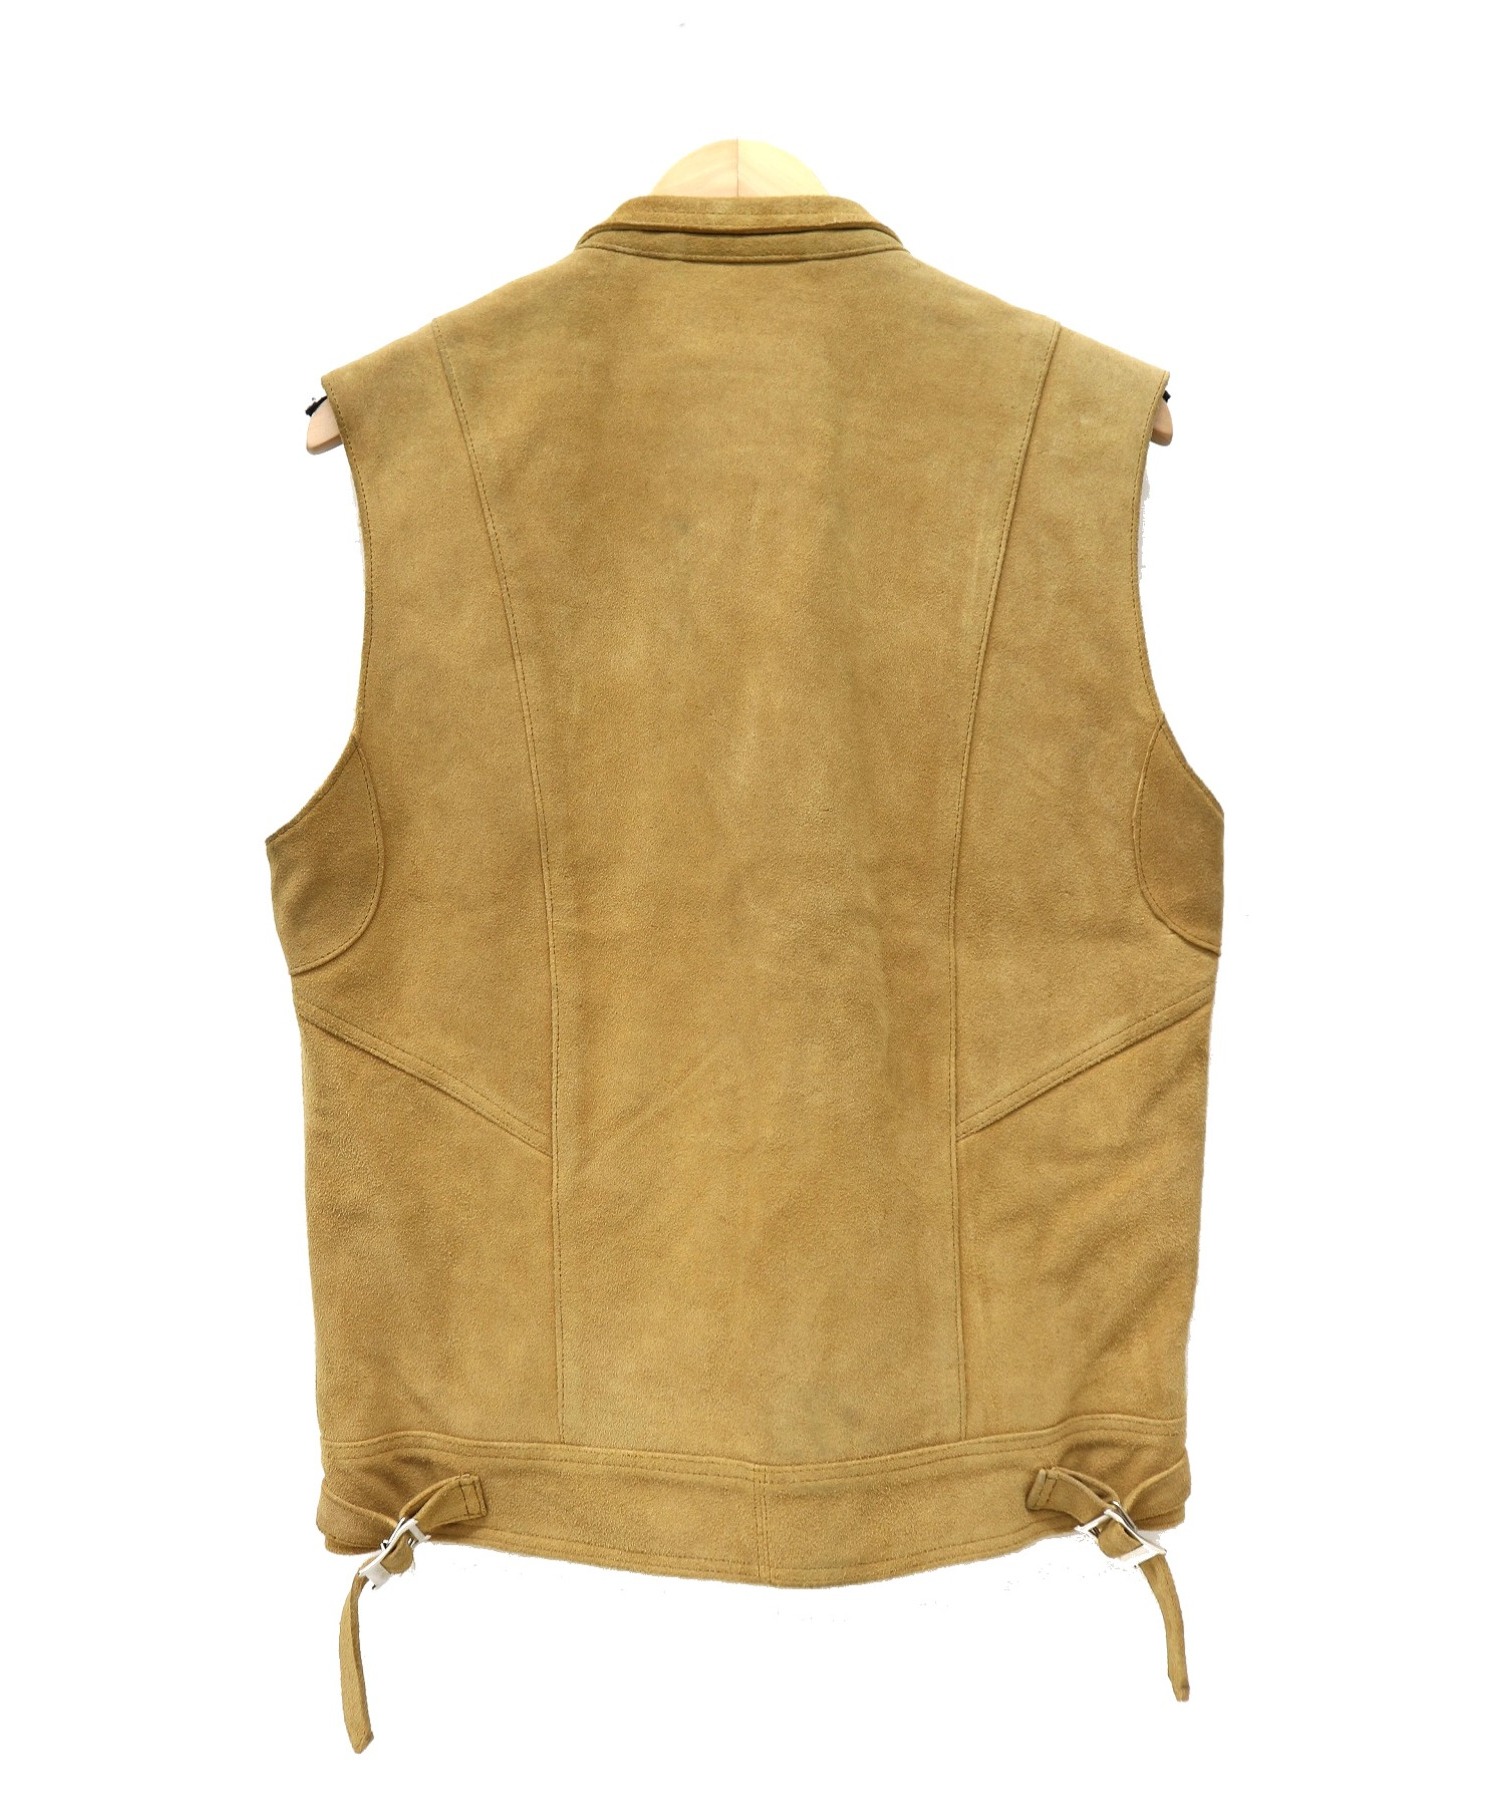 18200円中古値段 当店限定モデル UNUSED leather vest (white)レザー